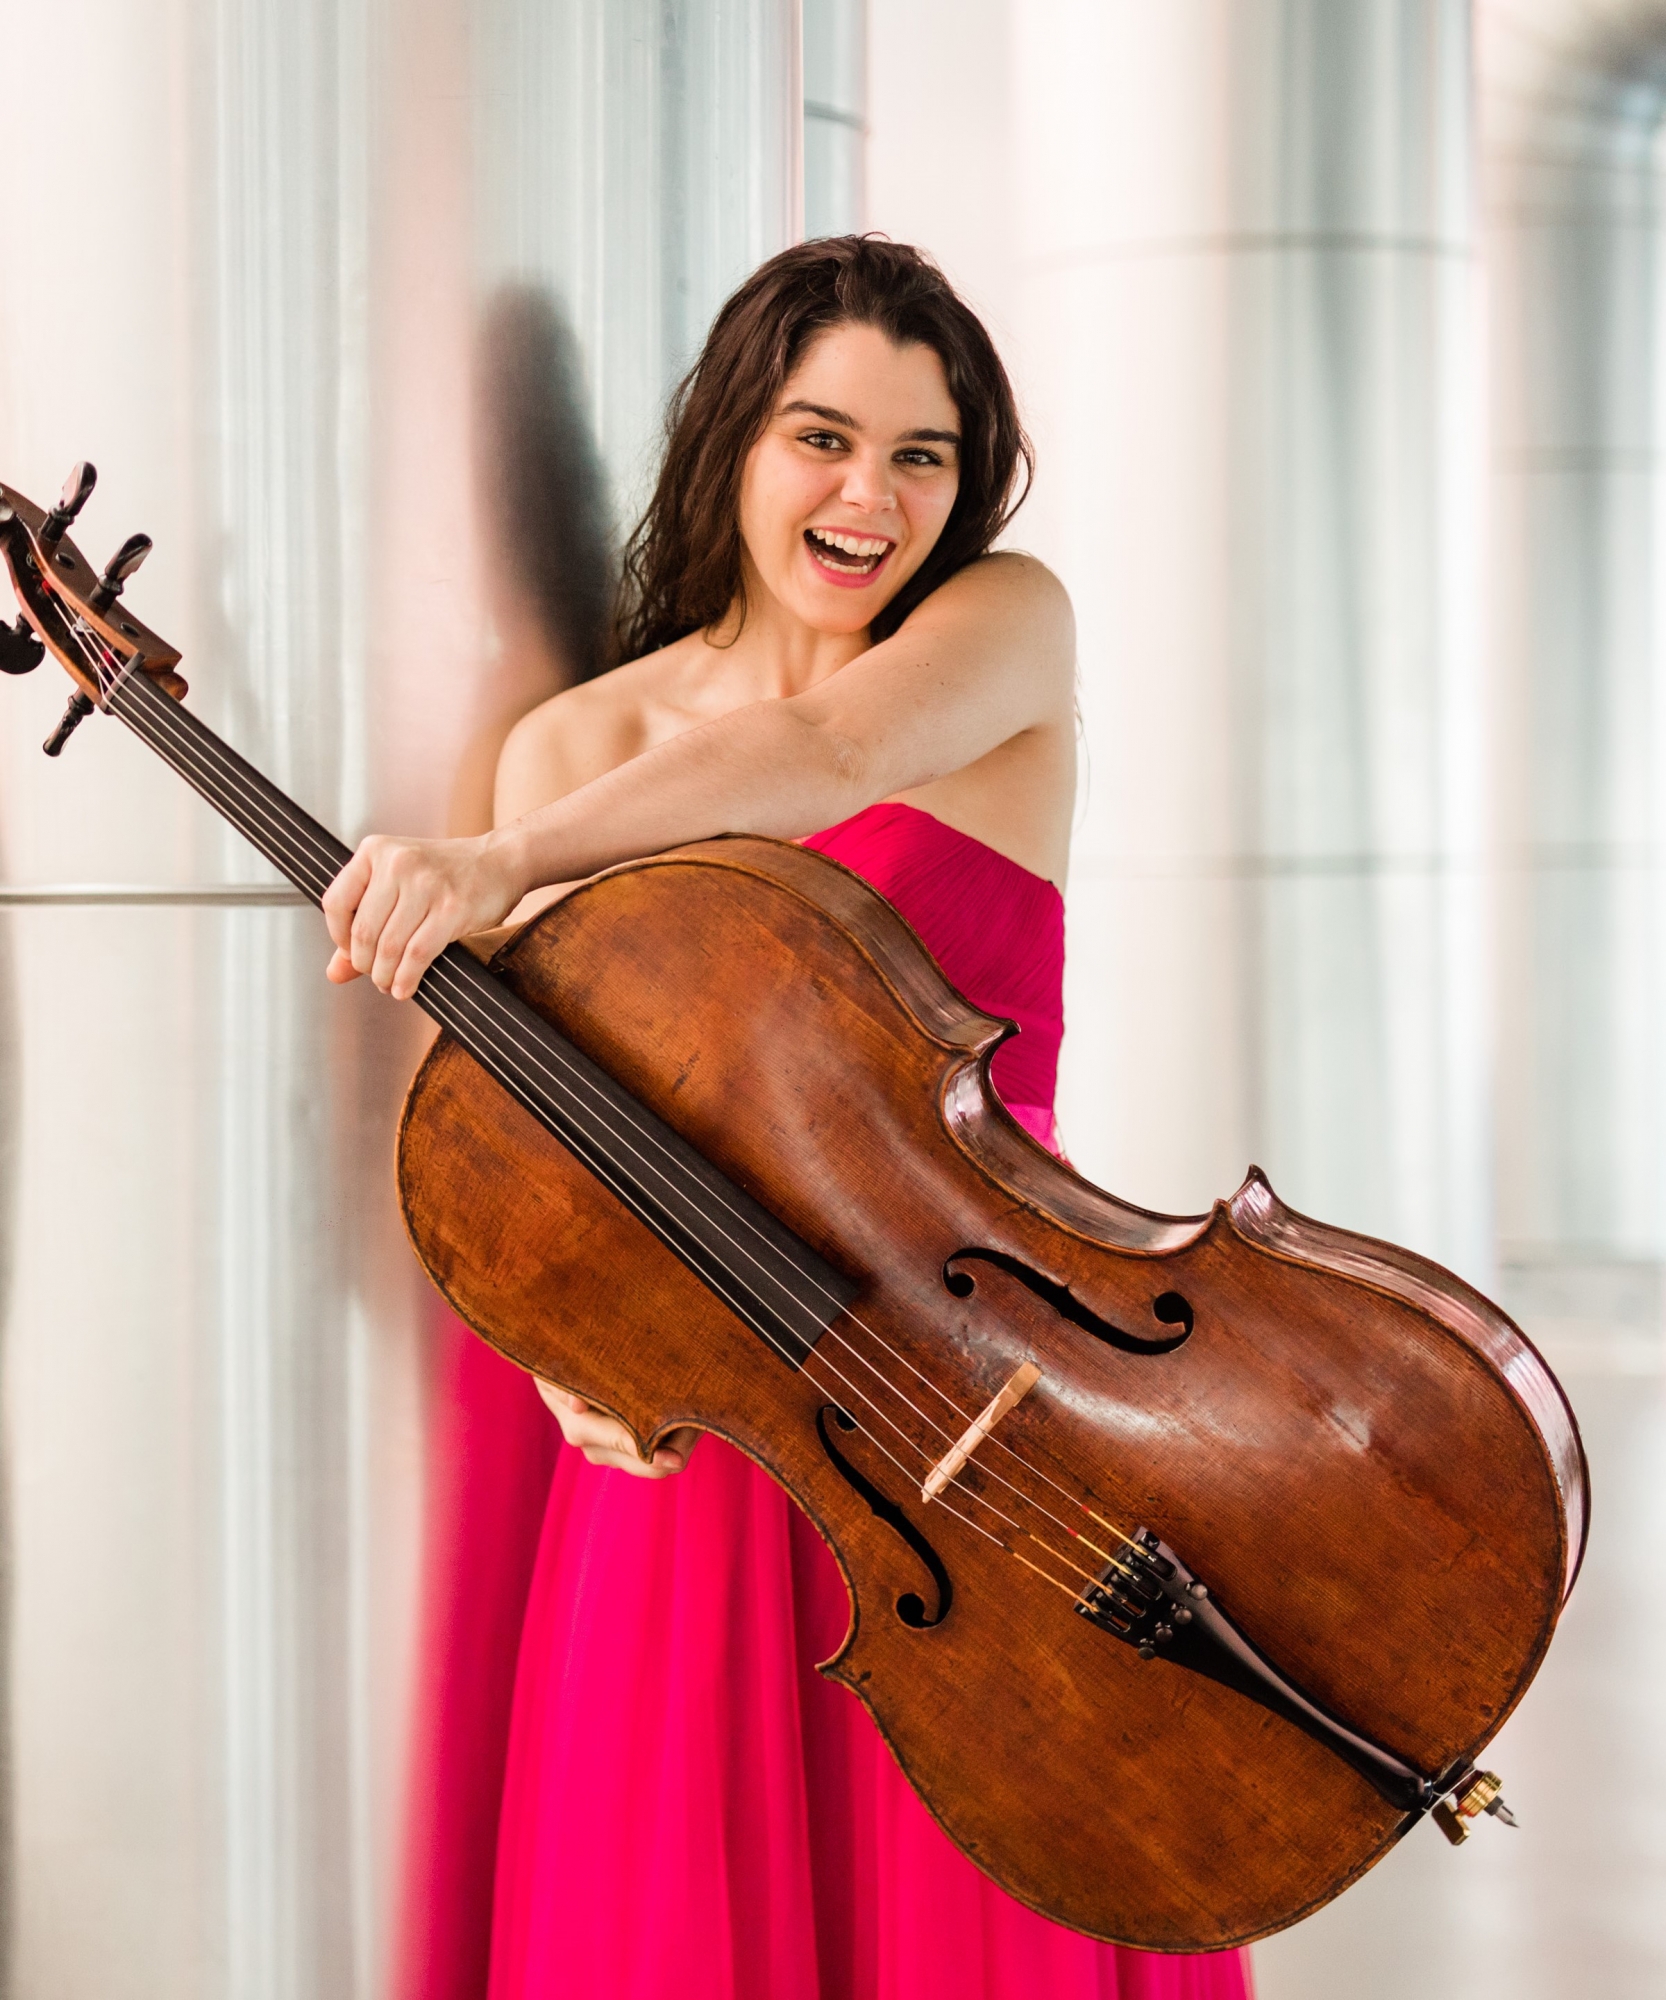 Estelle Revaz est originaire de Salvan, en Valais. Elle est actuellement considérée comme l'une des meilleures violoncellistes suisses.